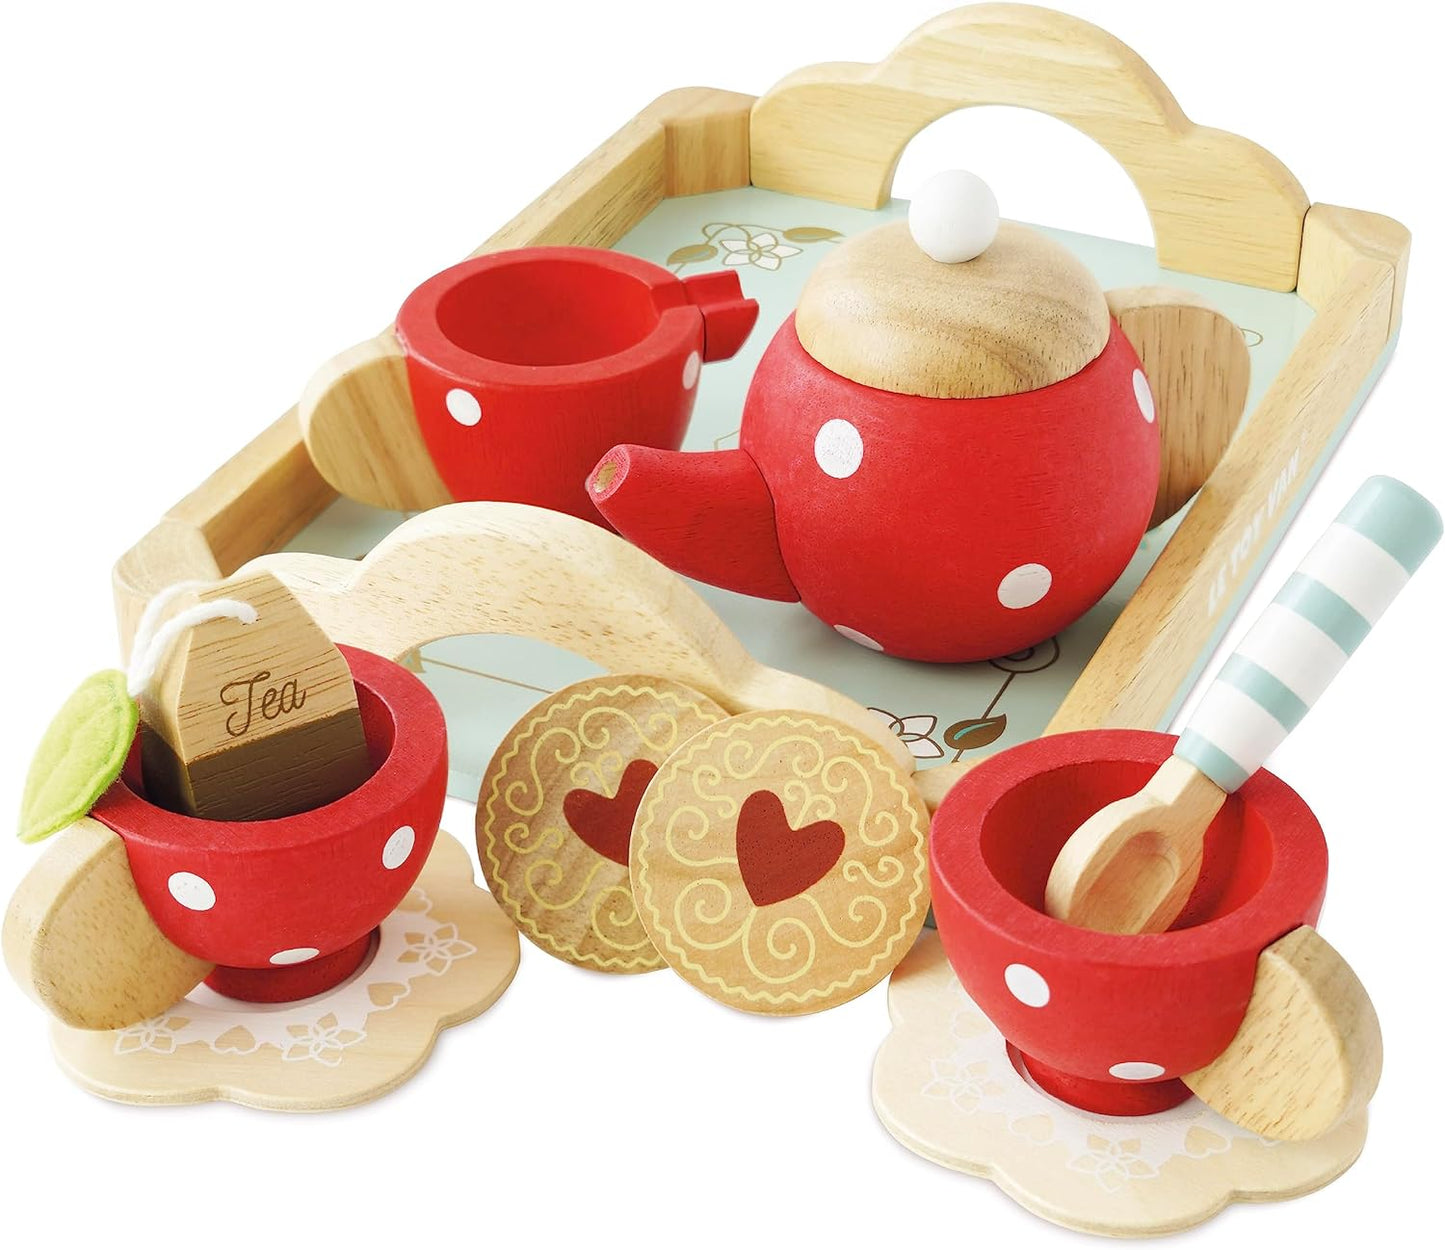 Le Toy Van - Jogo de chá infantil de madeira para bolo de mel fingir brincar de bule, bandeja, xícaras e pires | Brinquedo de dramatização para chá da tarde